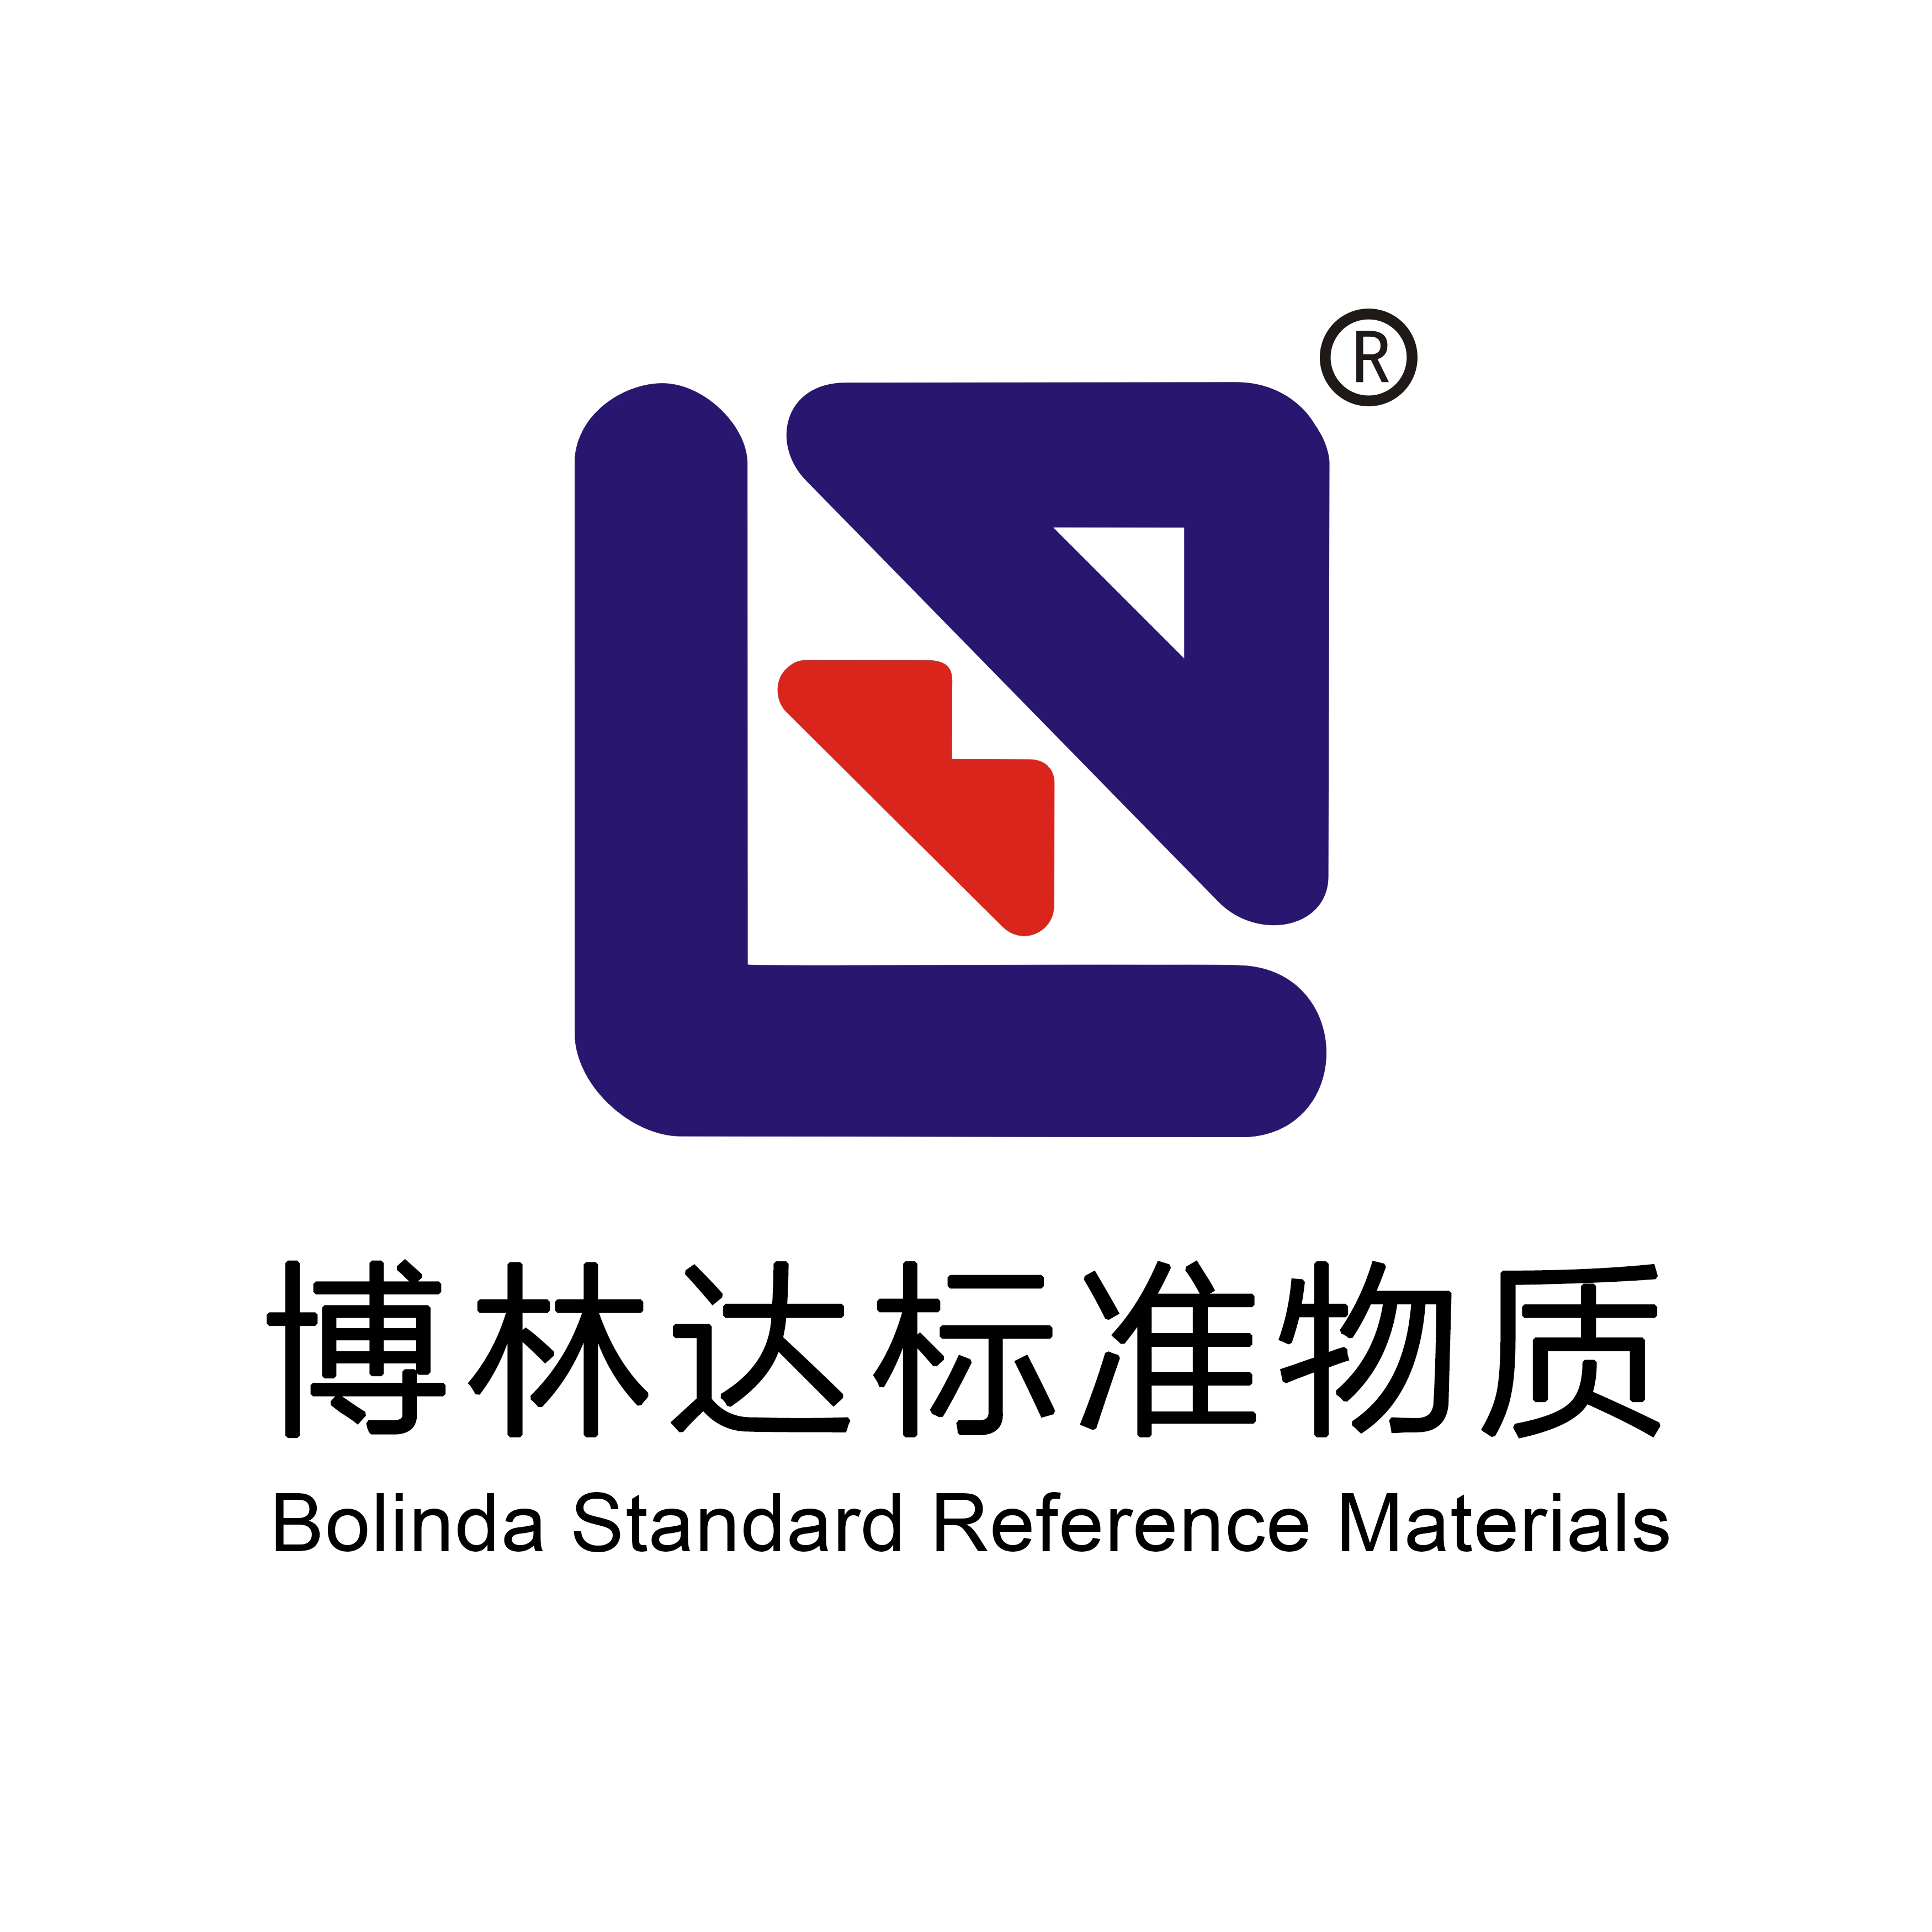 工业品检测标准物质 - 【博林达直营店】博林达标准物质商城 | 国家标准物质网